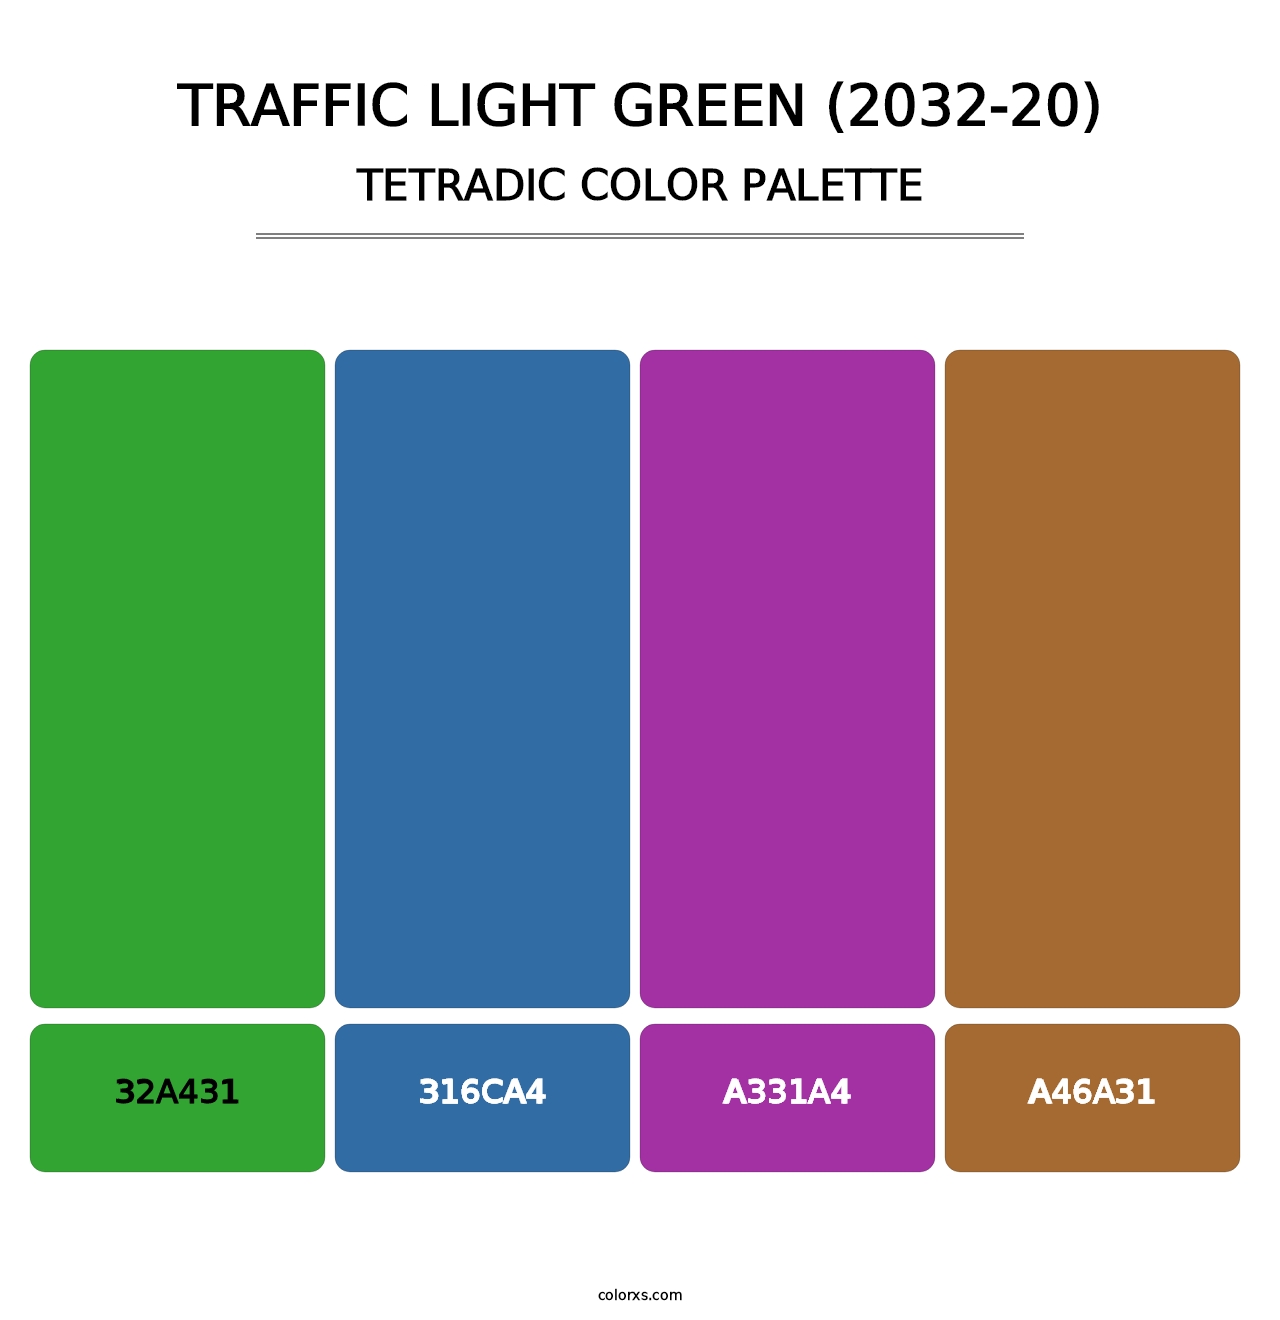 Traffic Light Green (2032-20) - Tetradic Color Palette